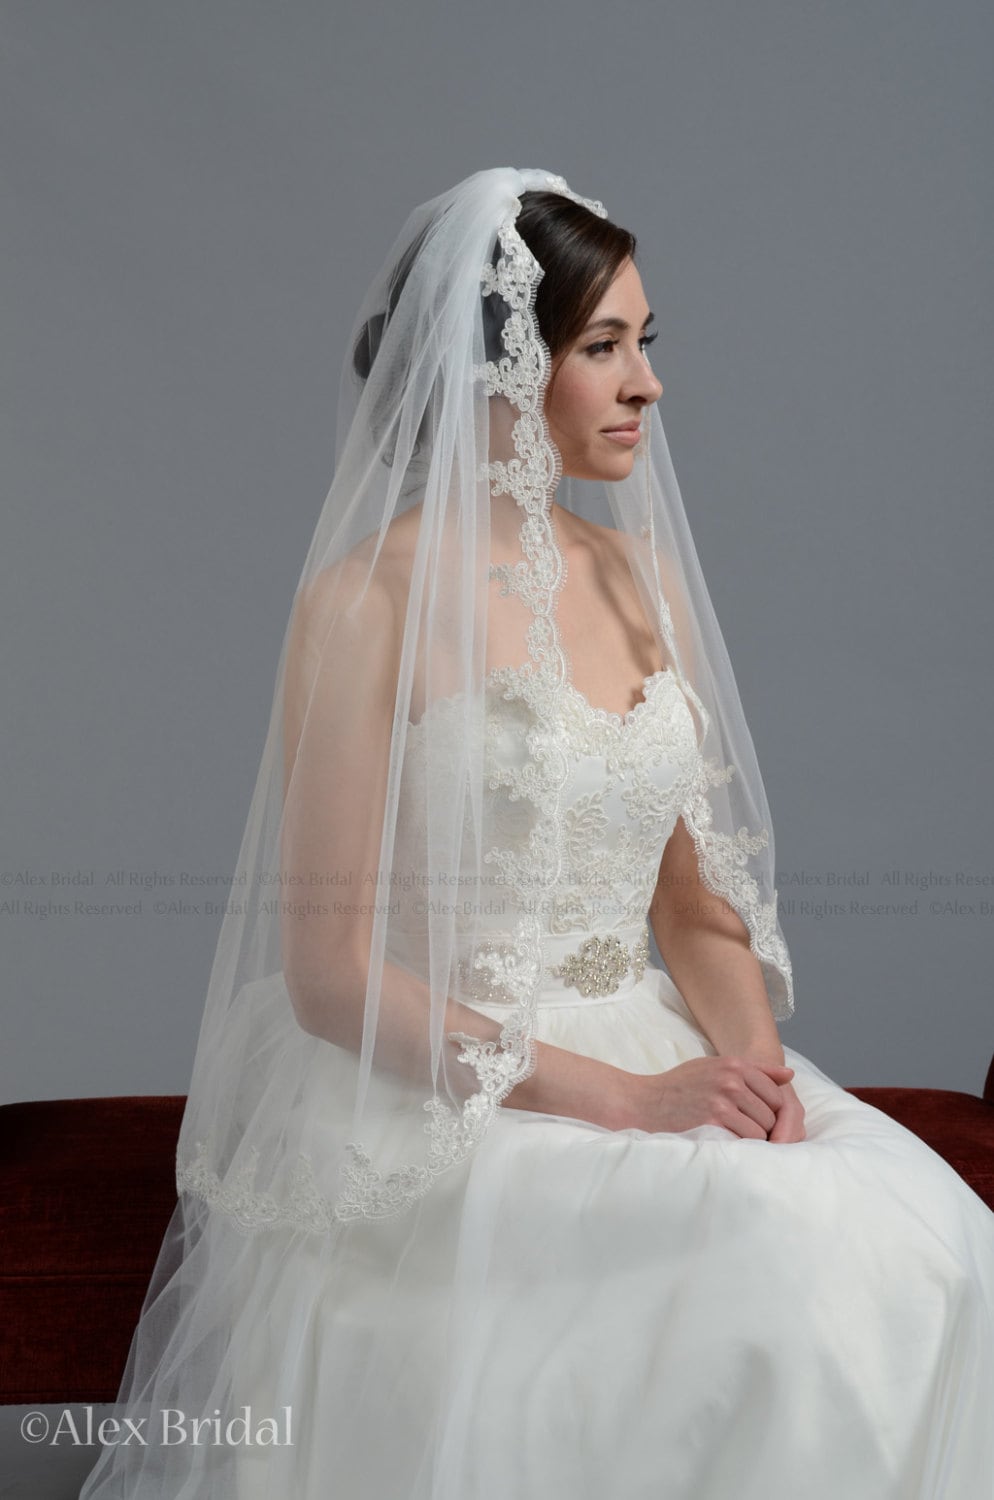 wedding veil, bridal veil, fingertip veil, alencon lace veil, wedding veil ivory, wedding veil white